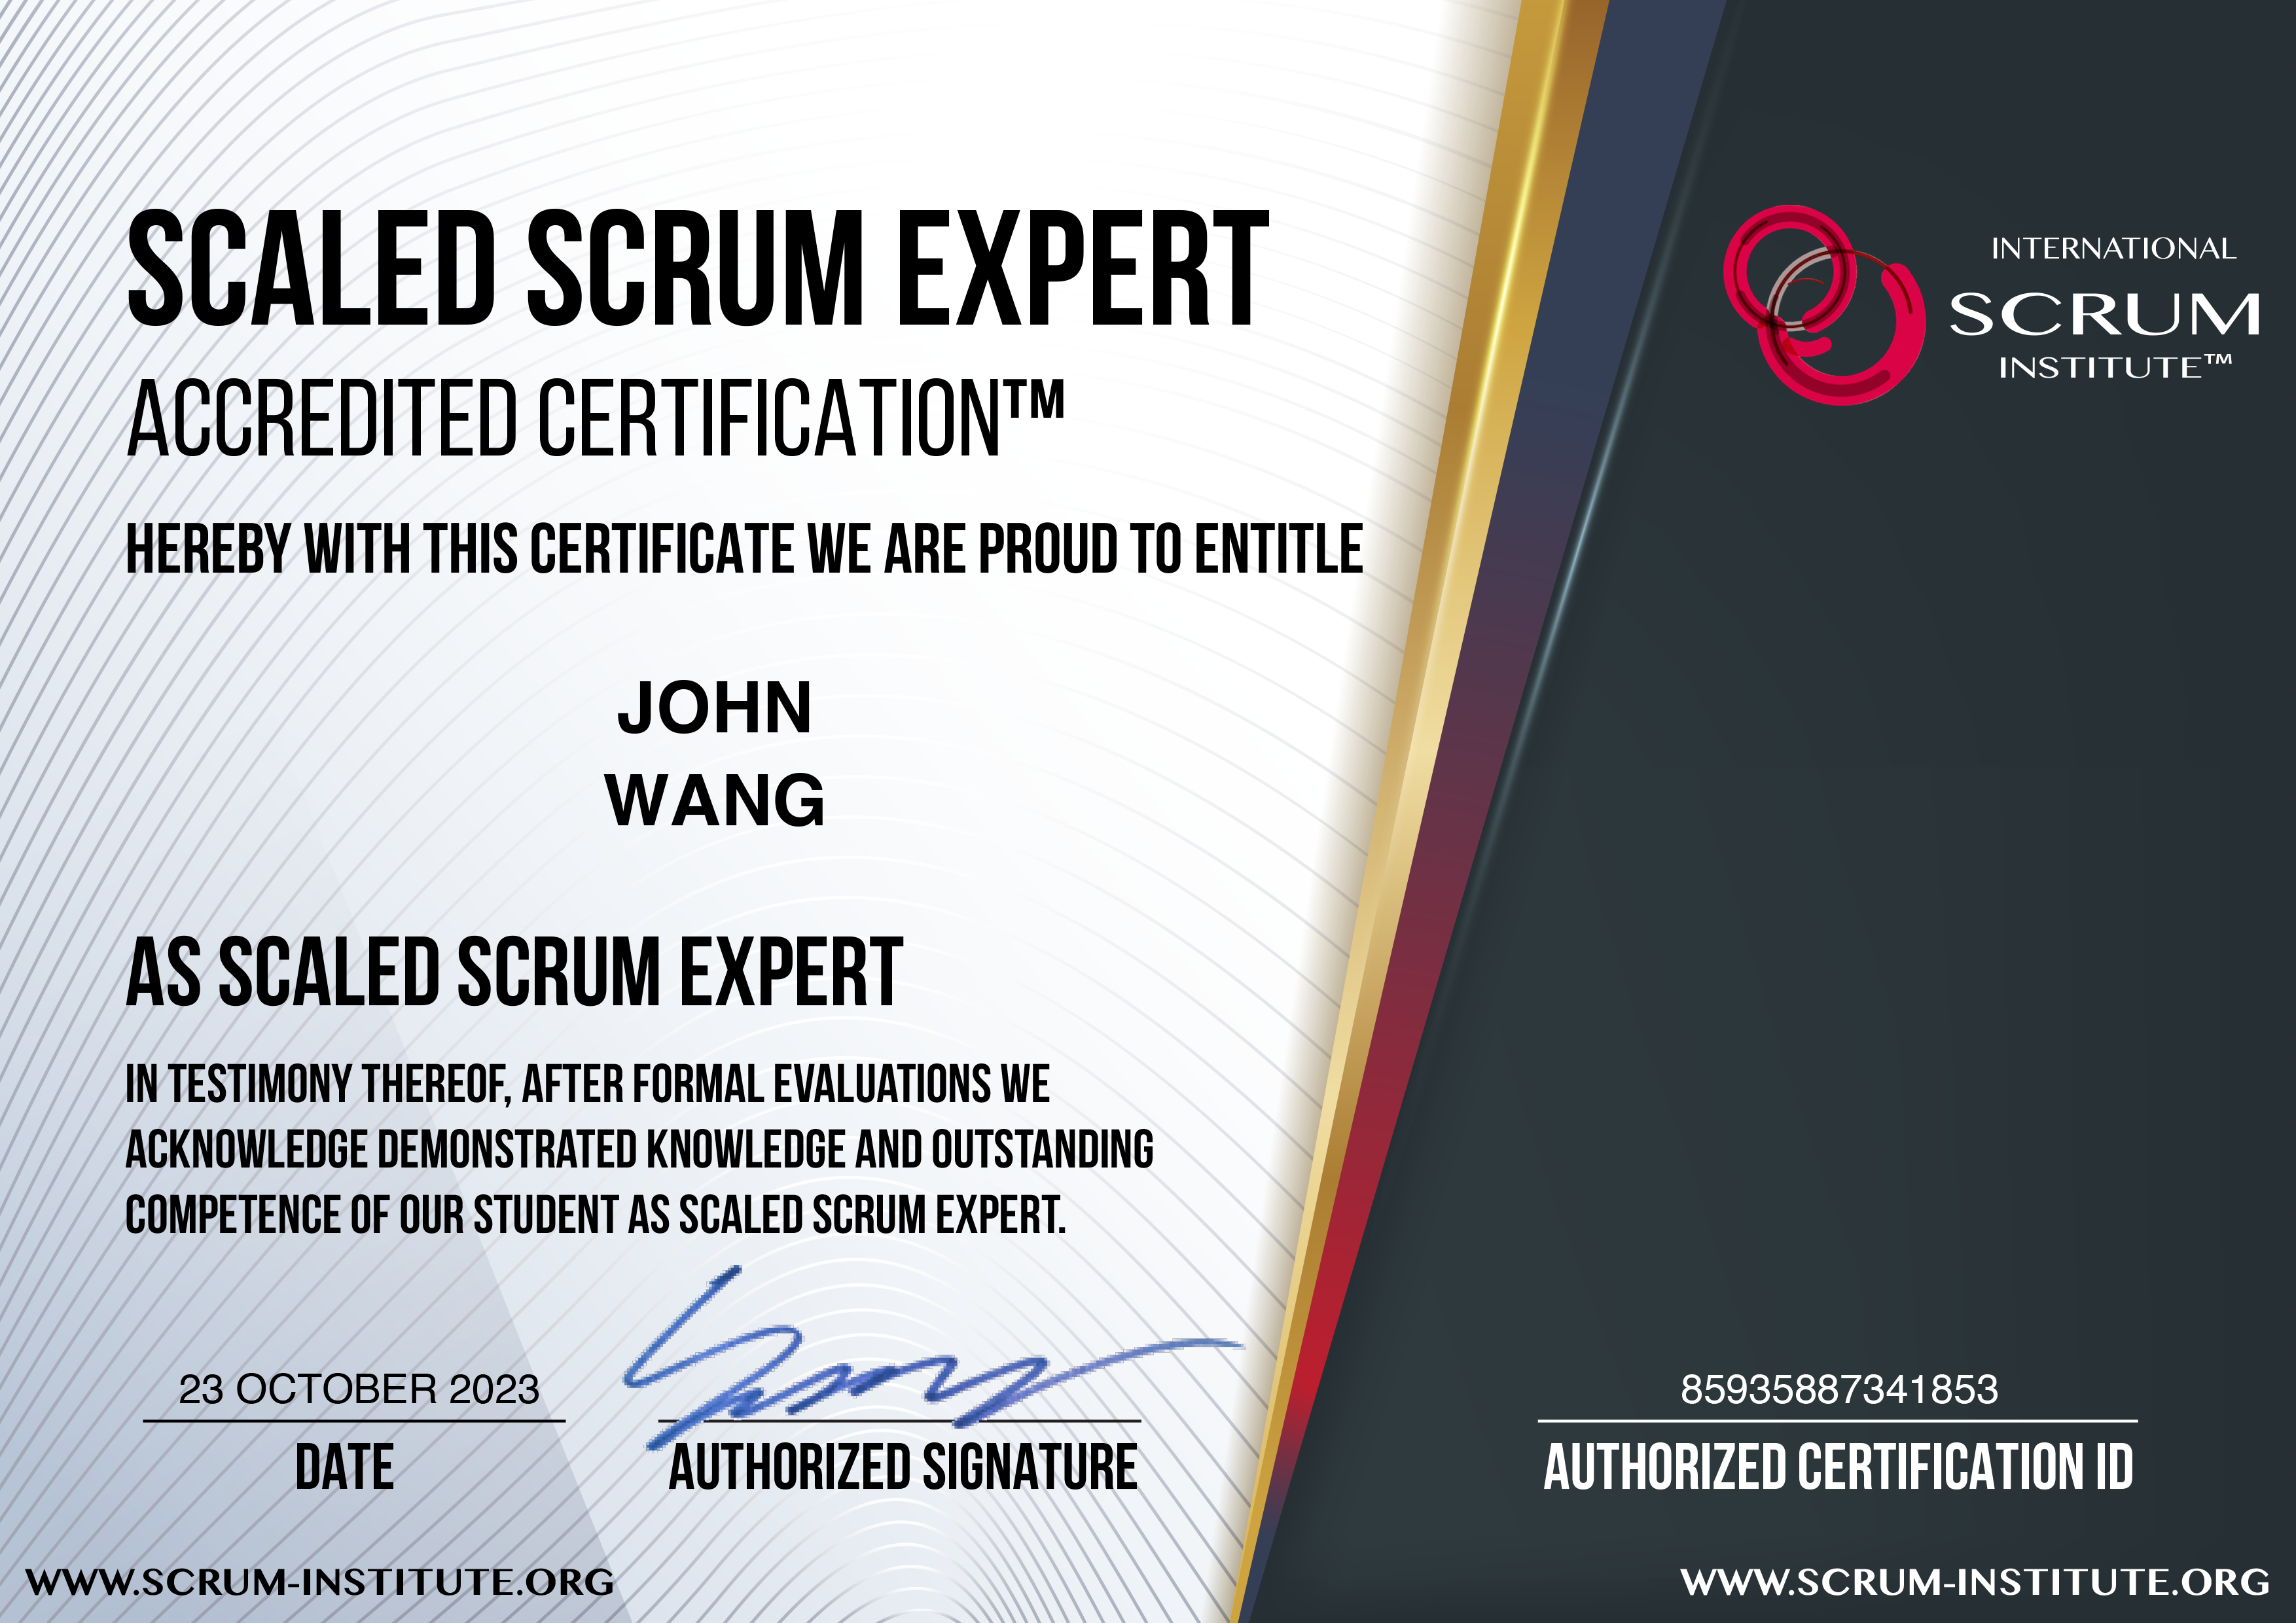 John's Scaled Scrum Expert (SSEAC) from Scrum Institute